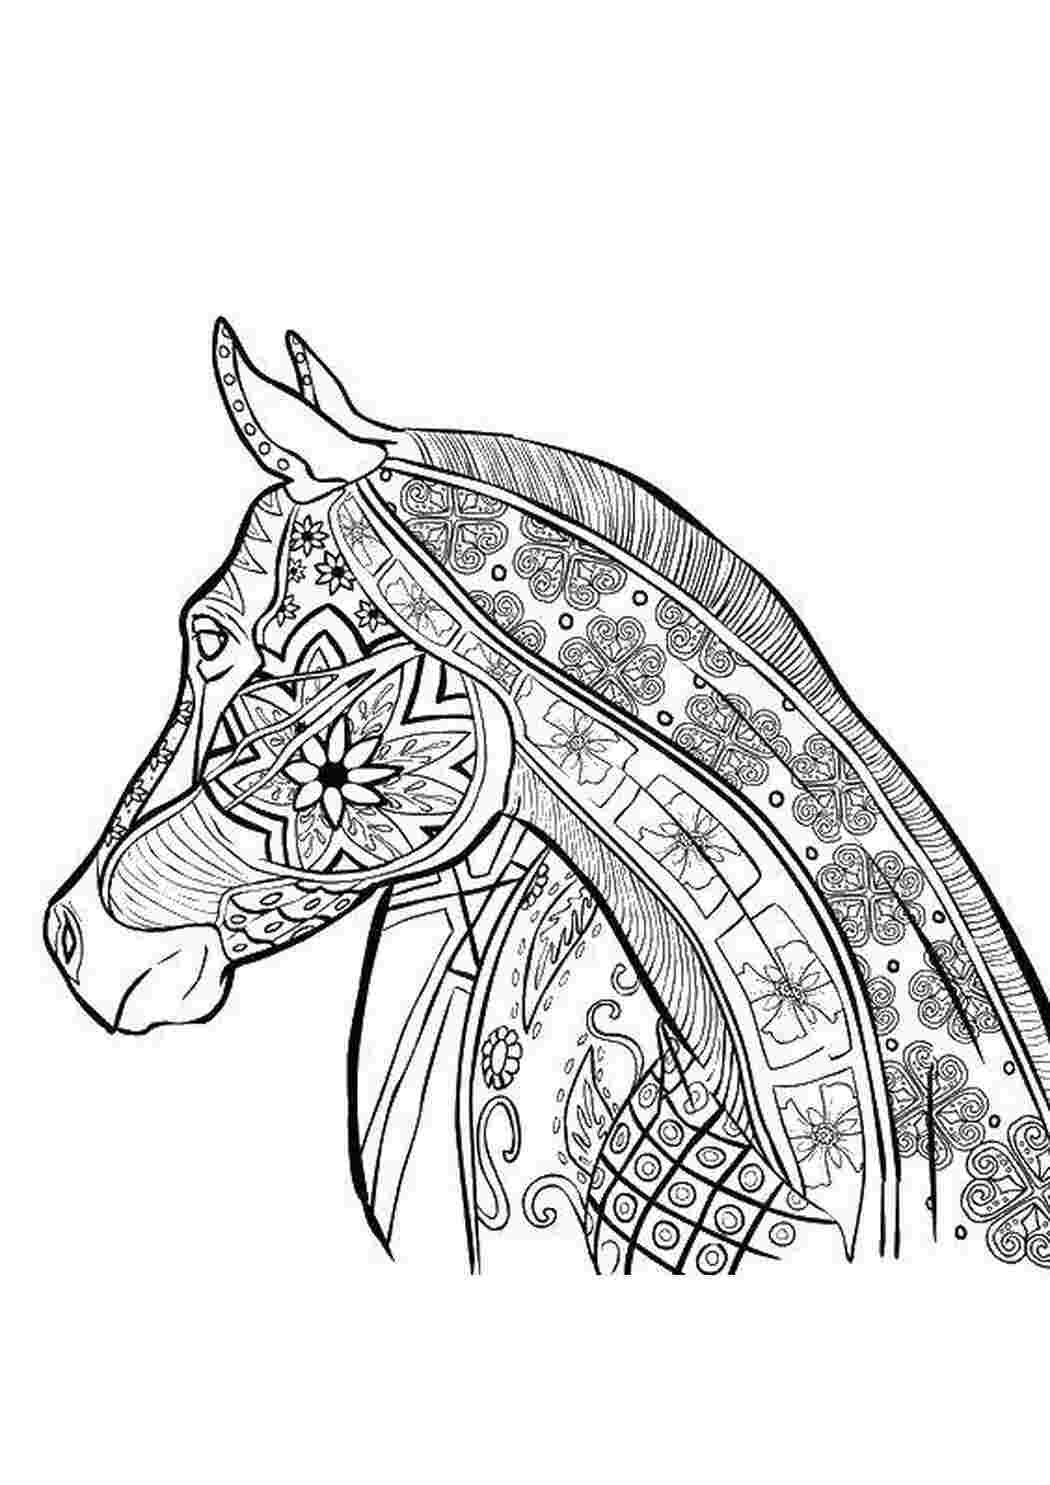 Раскраски Лошадь Антистресс антисресс, узоры, фигуры, лошадь